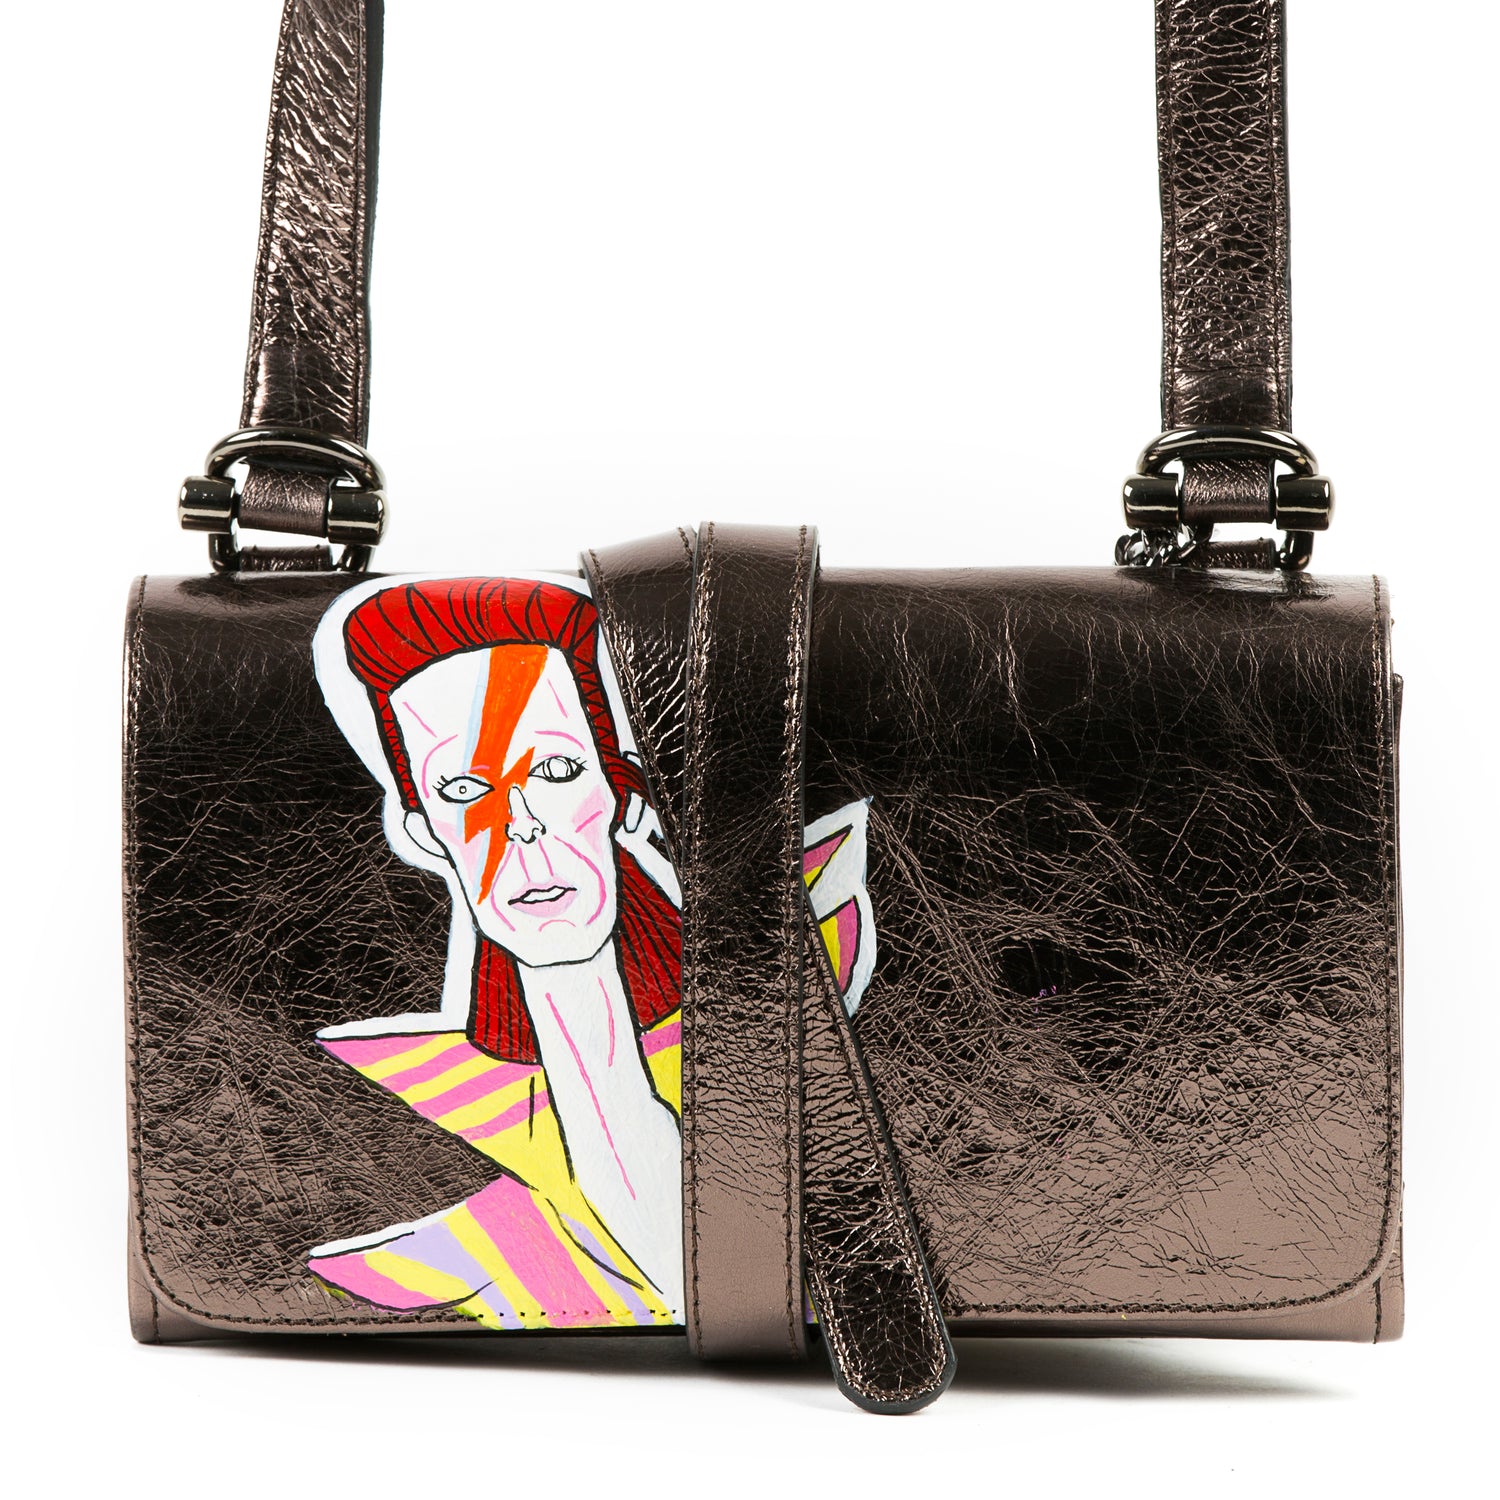 Survival Bag - David Bowie - Anna Cortina #ArtMeetsFashion